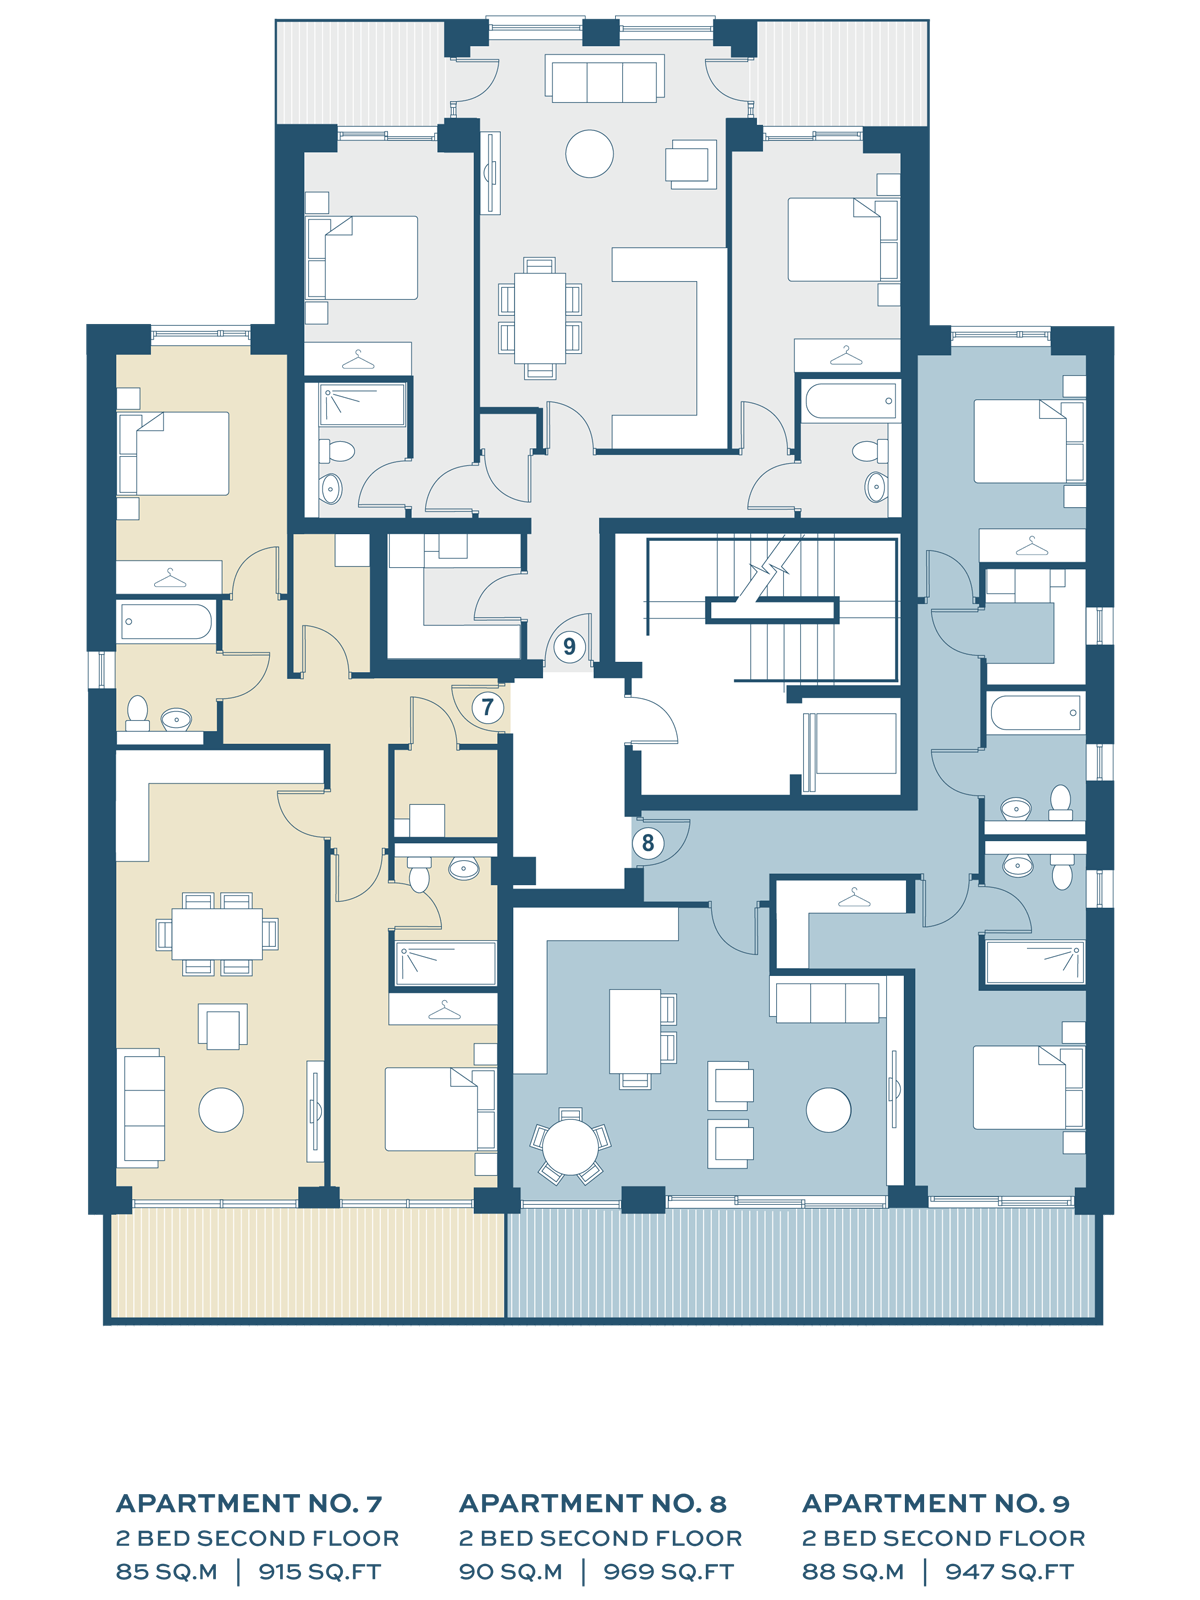 Second Floor Floor Plans